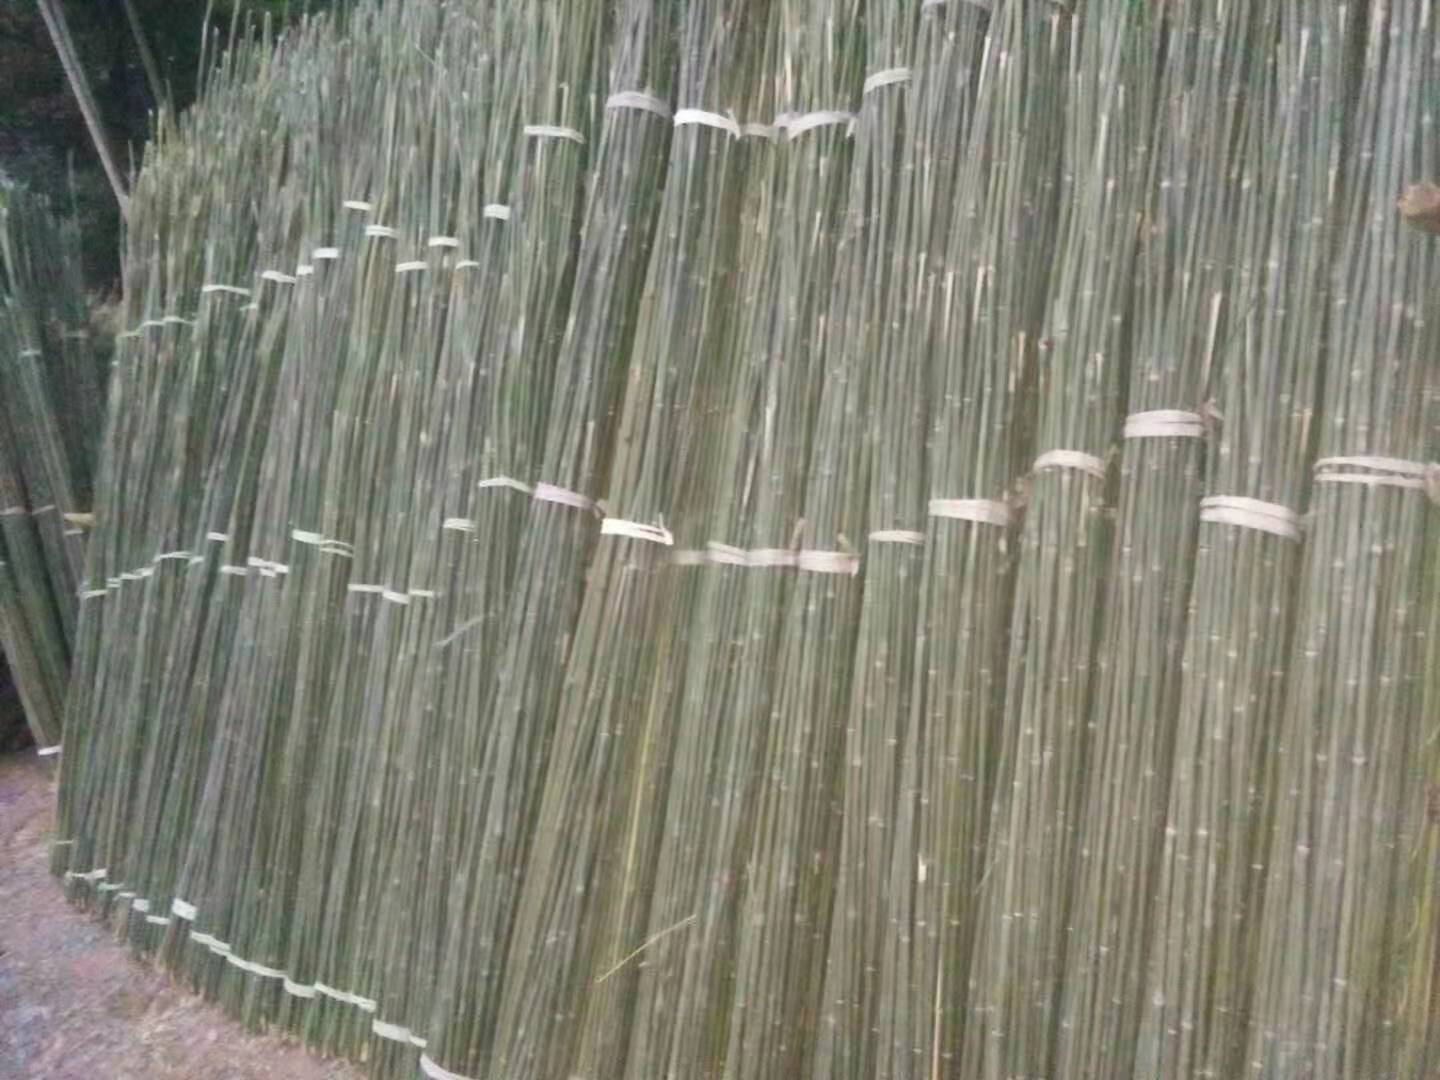 大棚葡萄架农用竹竿 大量批发2.7米长种菜用竹子 蔬菜爬藤搭架用竹子图片